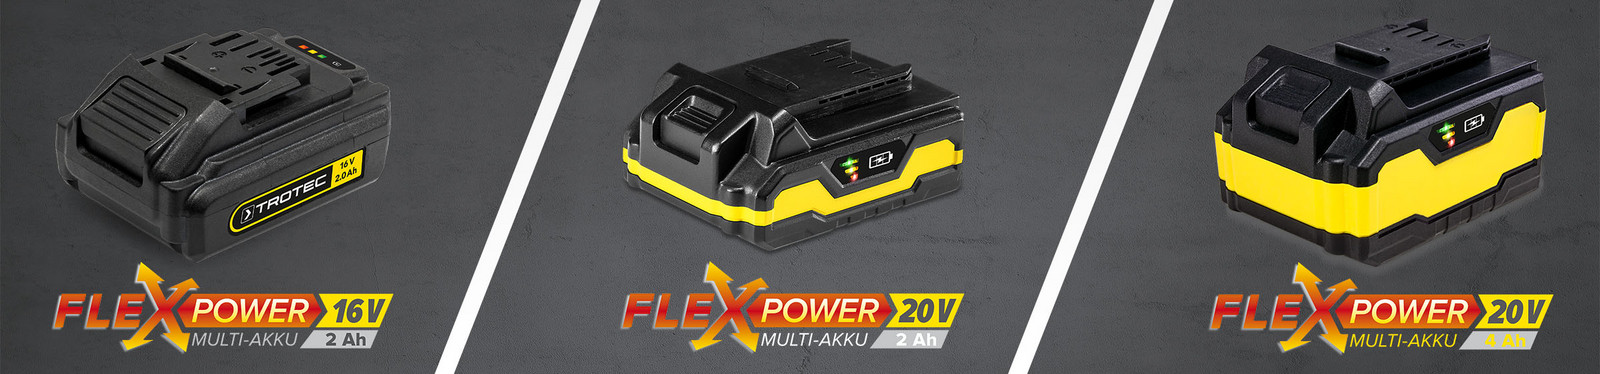 Flexpower – det innovativa multibatteri-systemet från Trotec